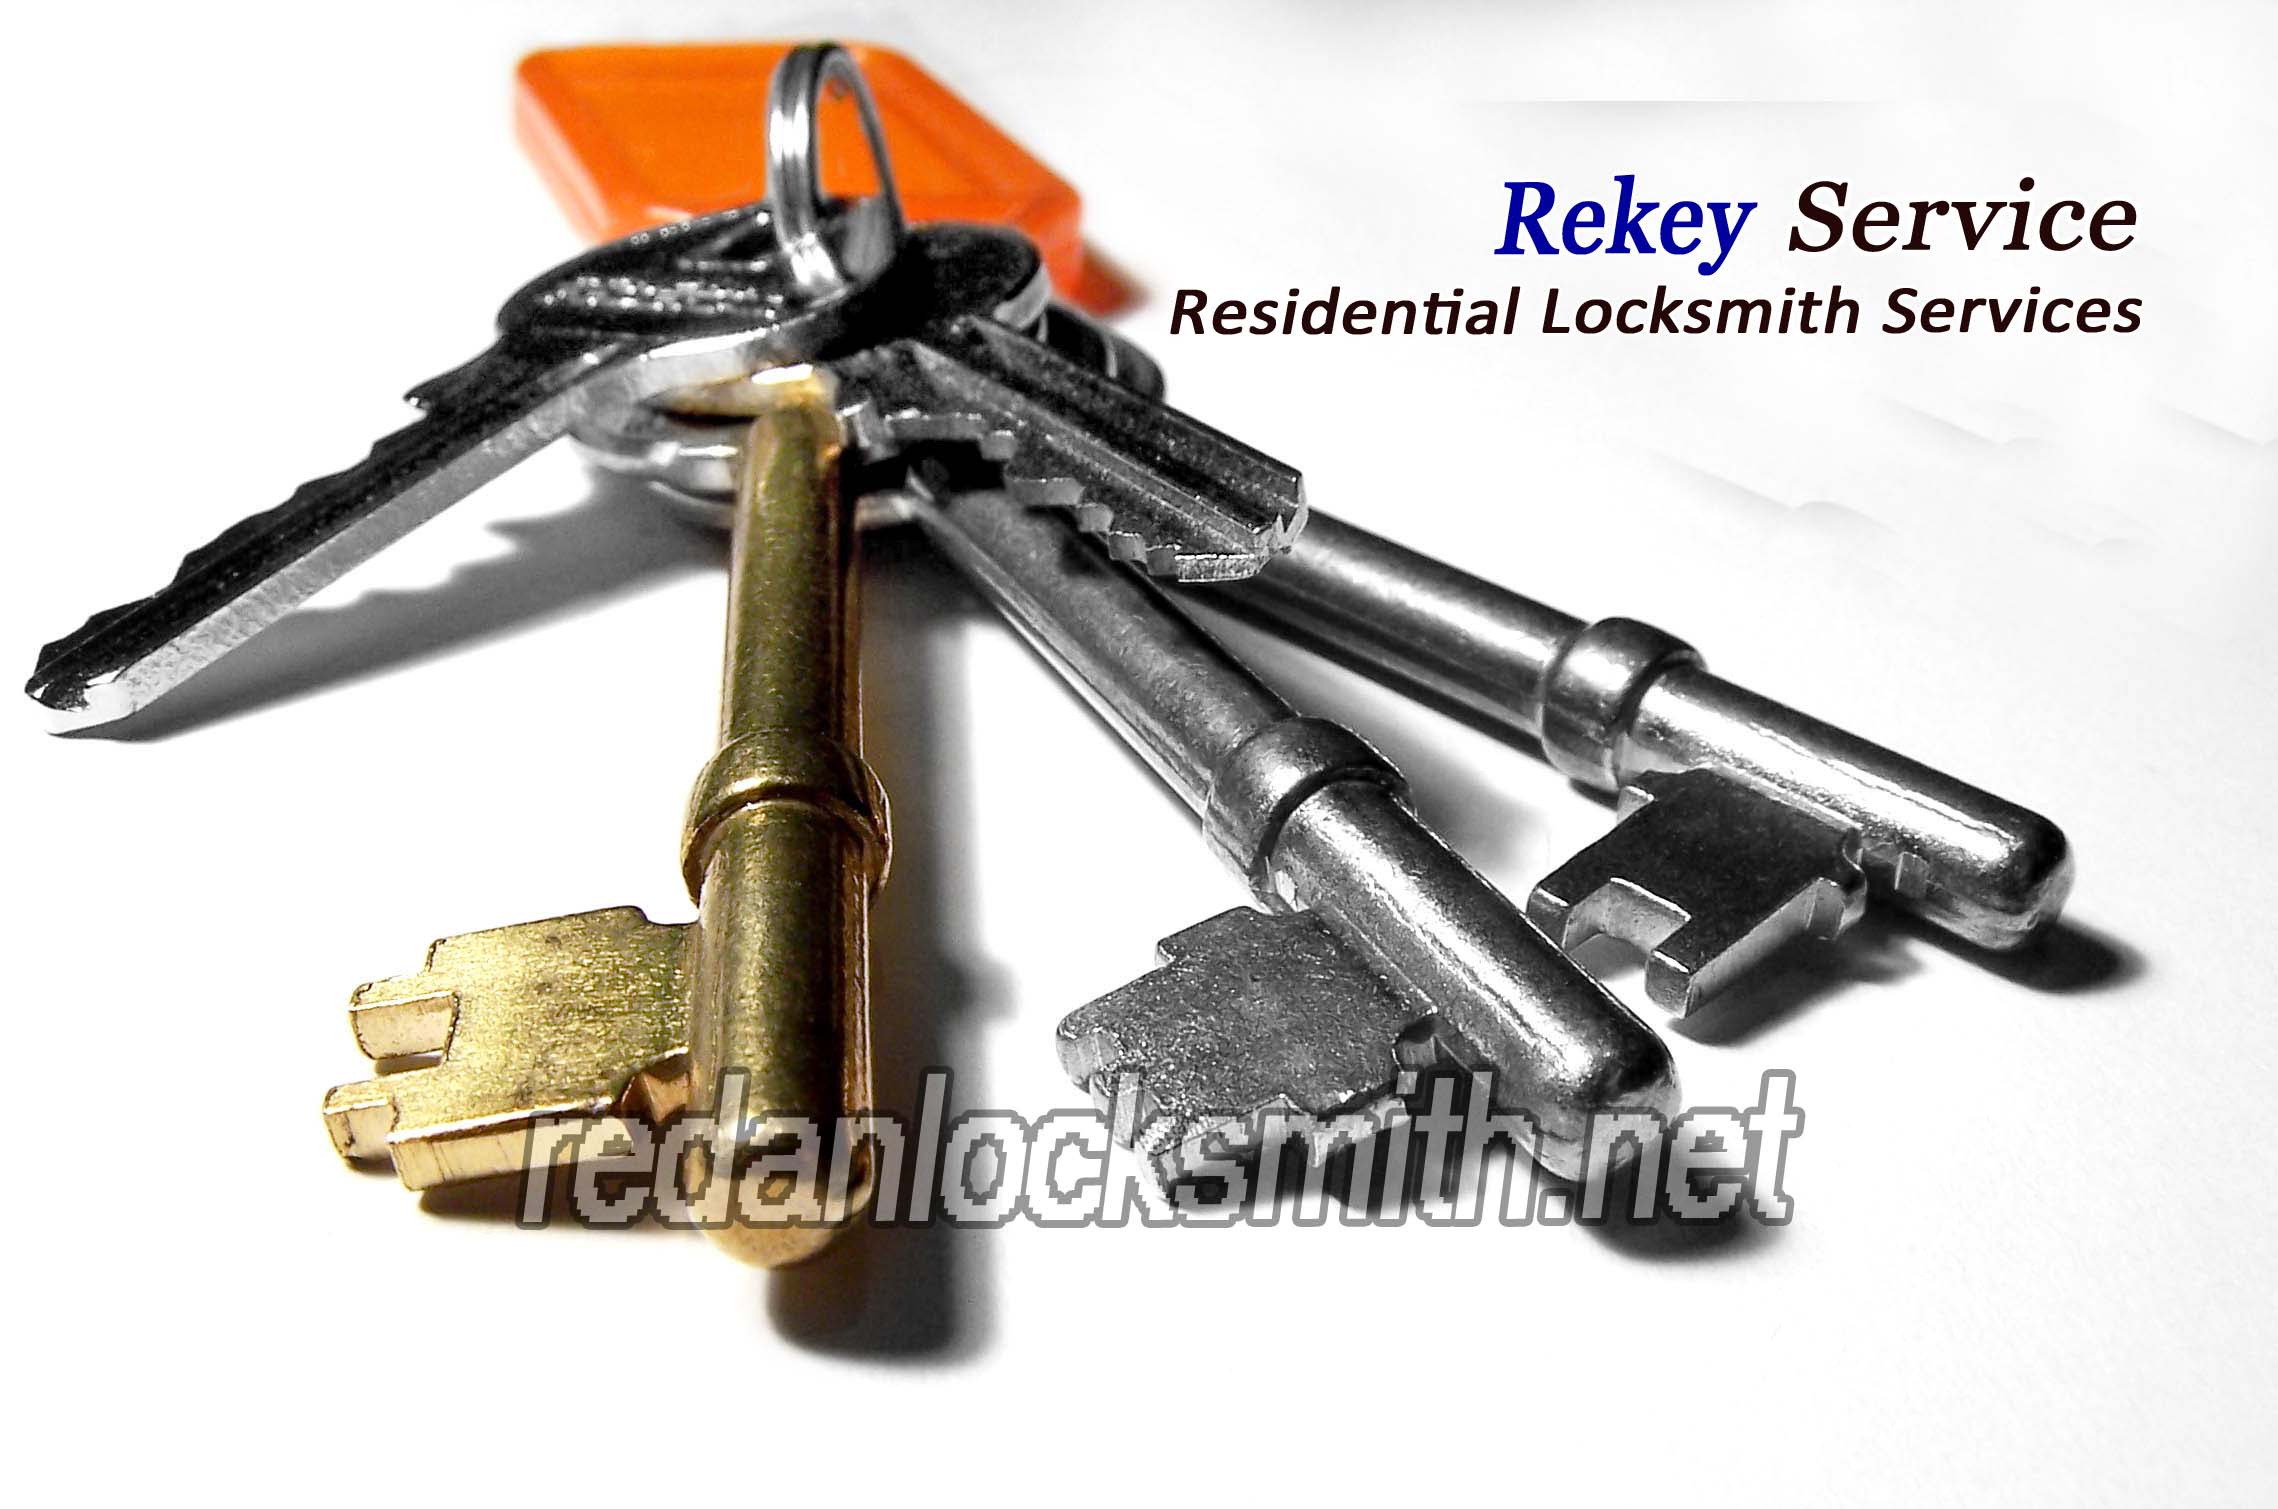 Redan-locksmith-rekey-service